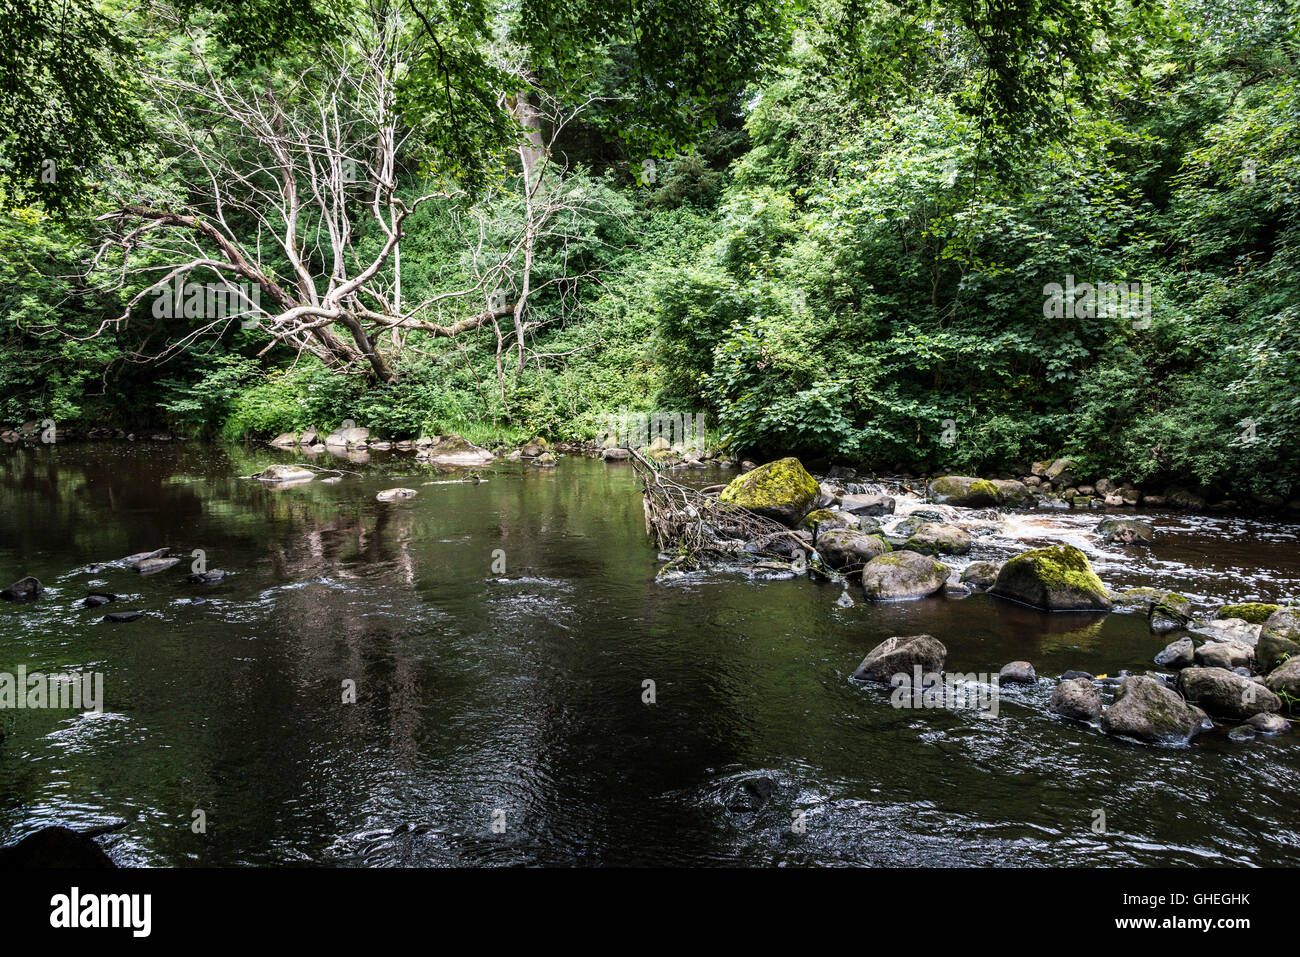 La rivière, d'amande, en Écosse Banque D'Images